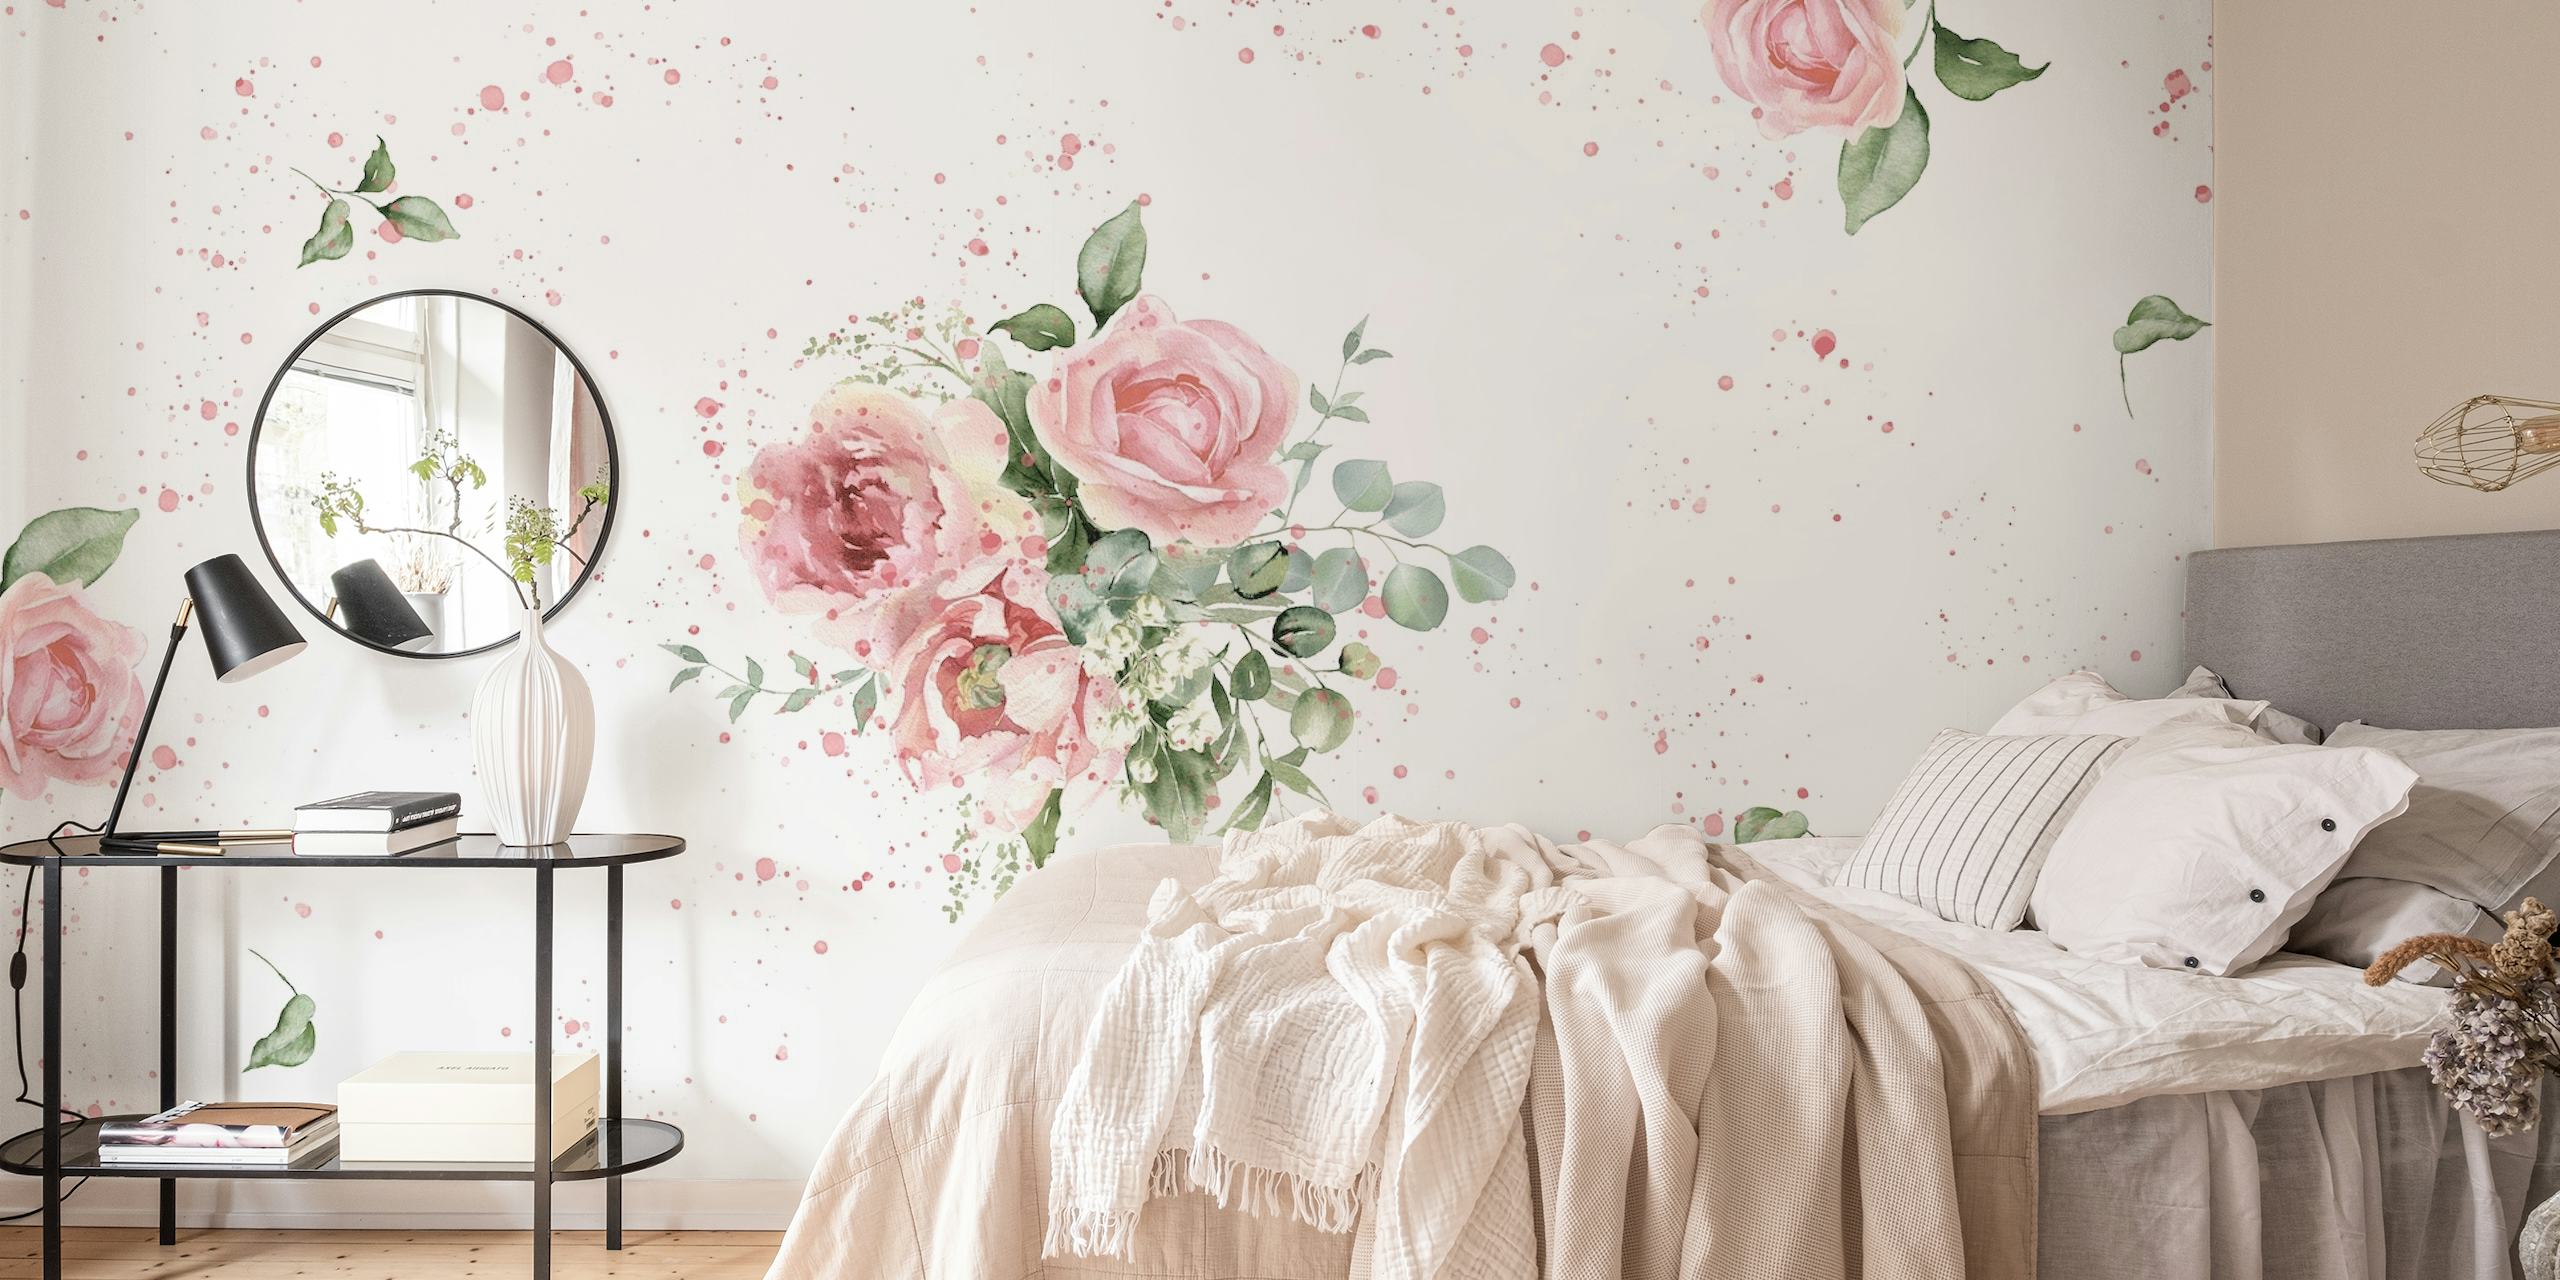 Elegant watercolor roses papel pintado